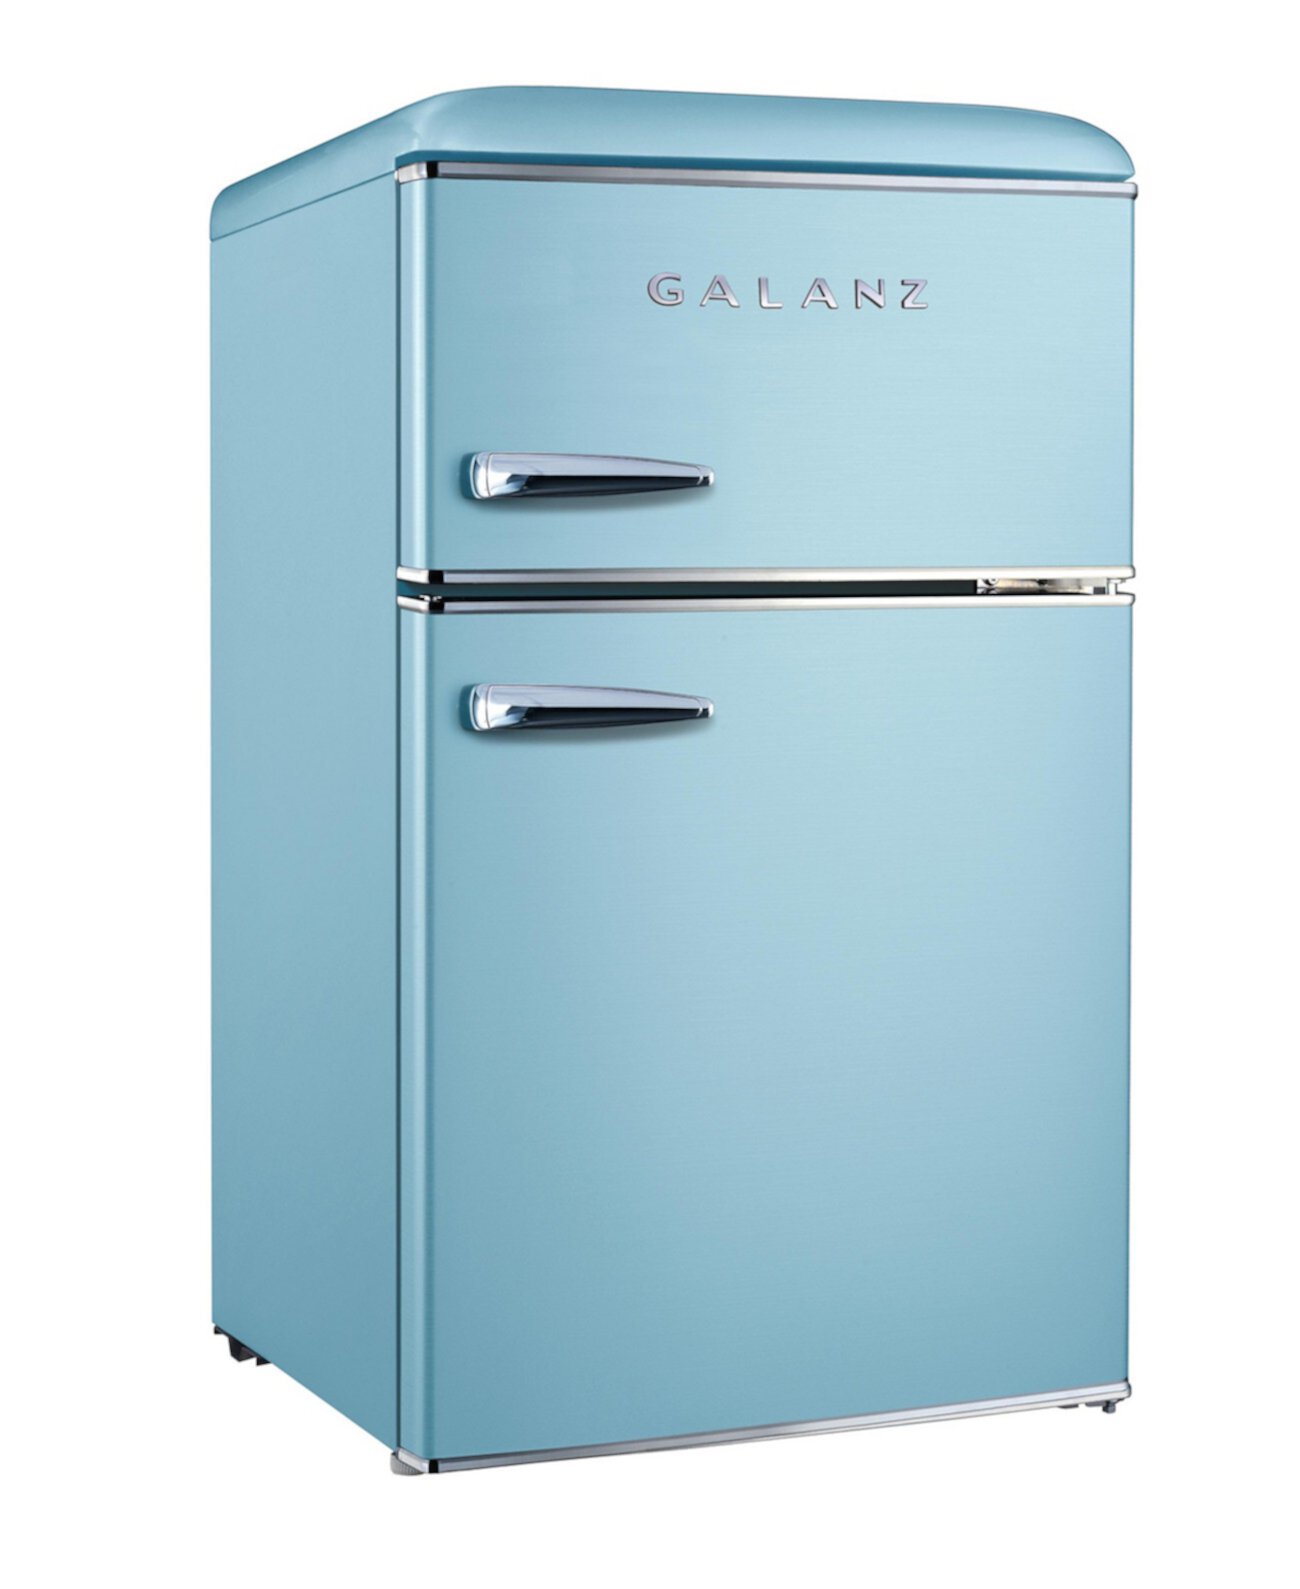 3.1 Cu. Ft. Двухдверный мини-холодильник в стиле ретро Galanz